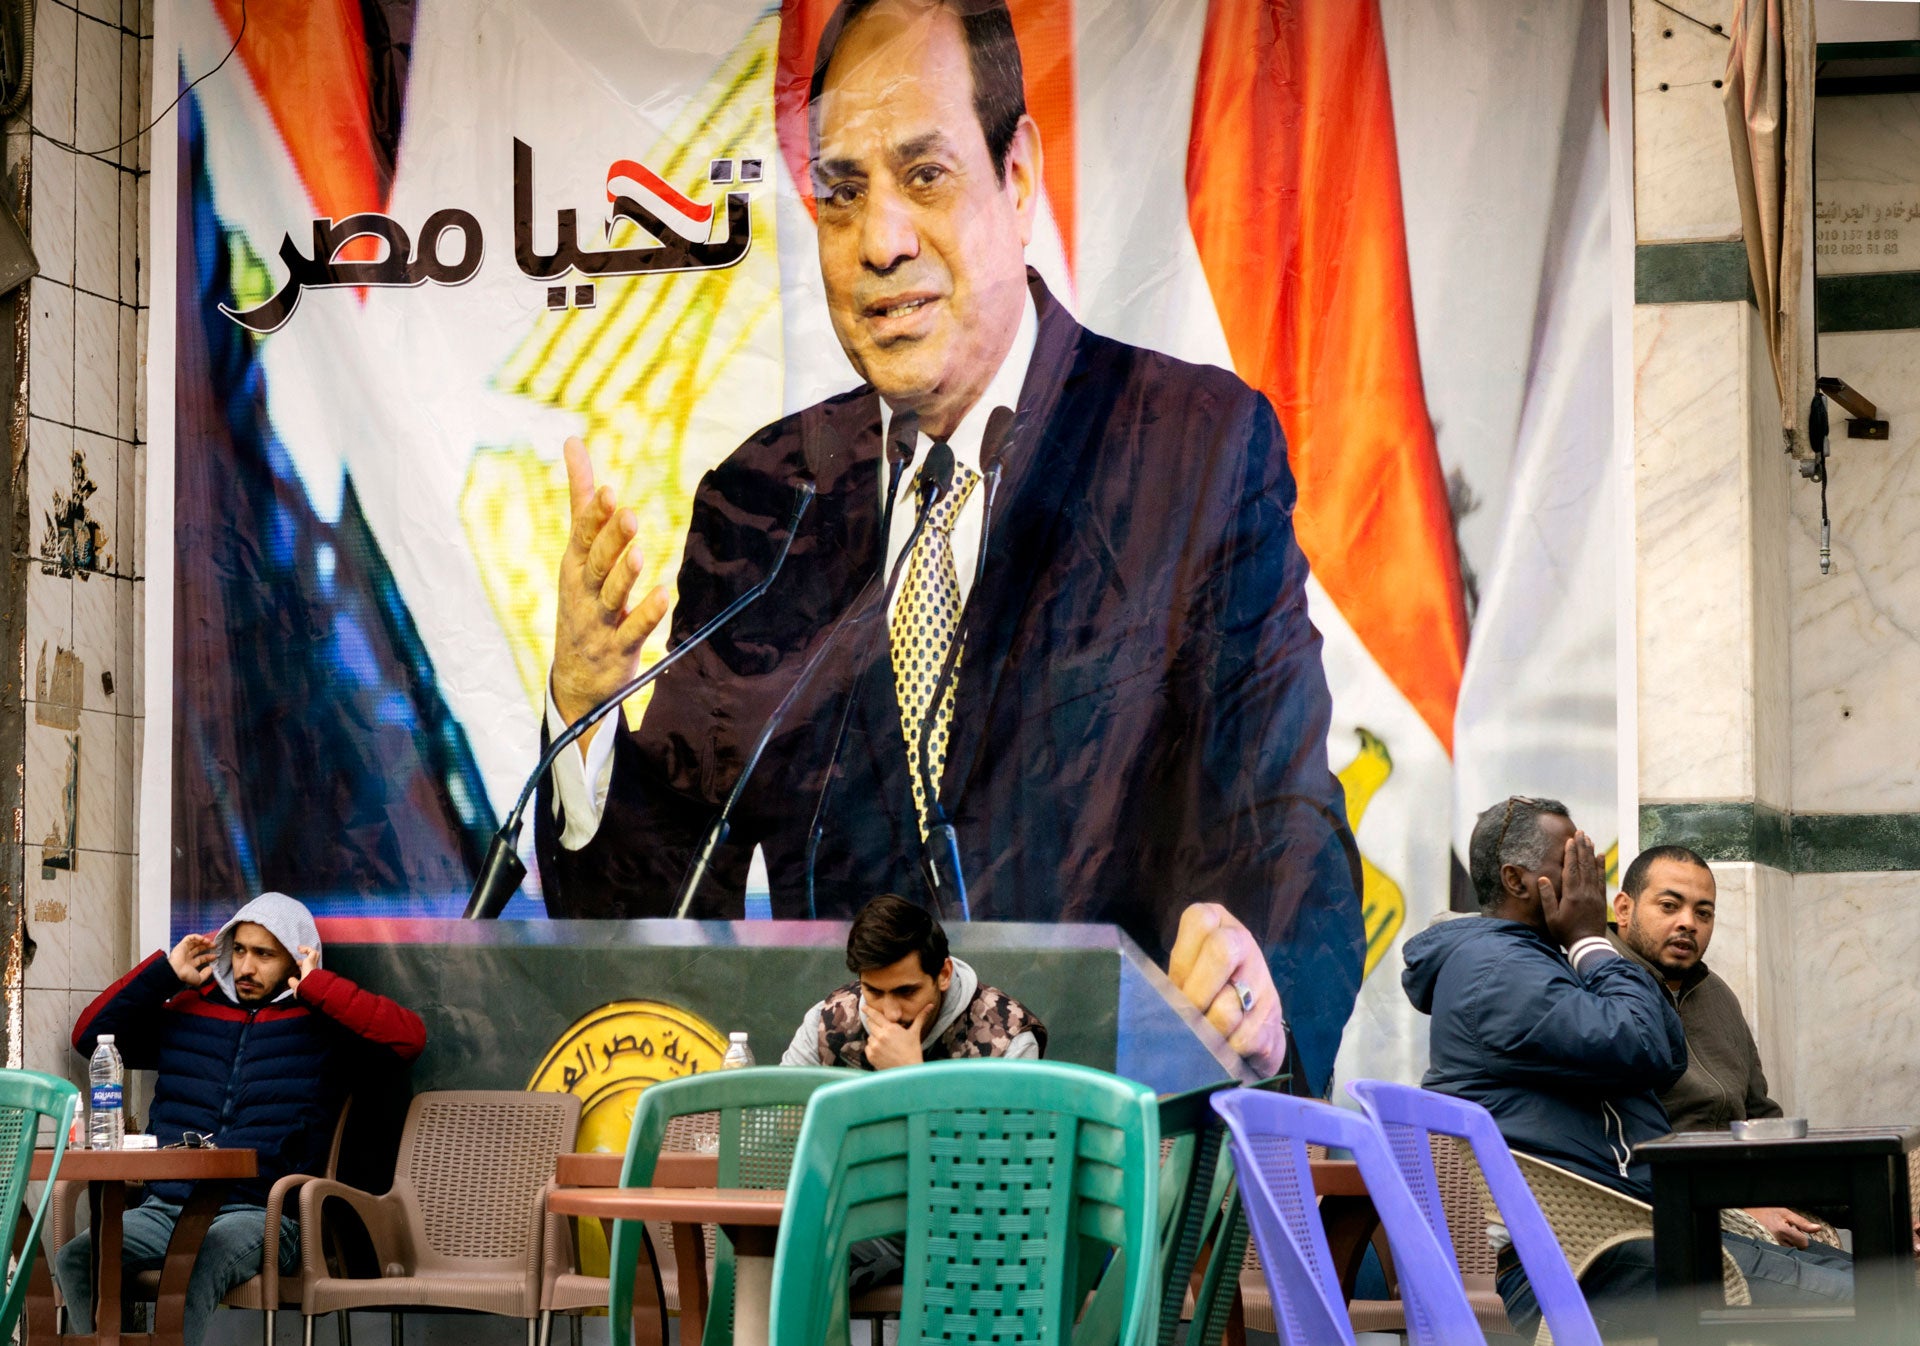 أشخاص يجلسون تحت لافتة تحمل صورة الرئيس المصري عبد الفتاح السيسي كتب عليها، "تحيا مصر" في مقهى في القاهرة، مصر، 22 مارس/آذار 2022.